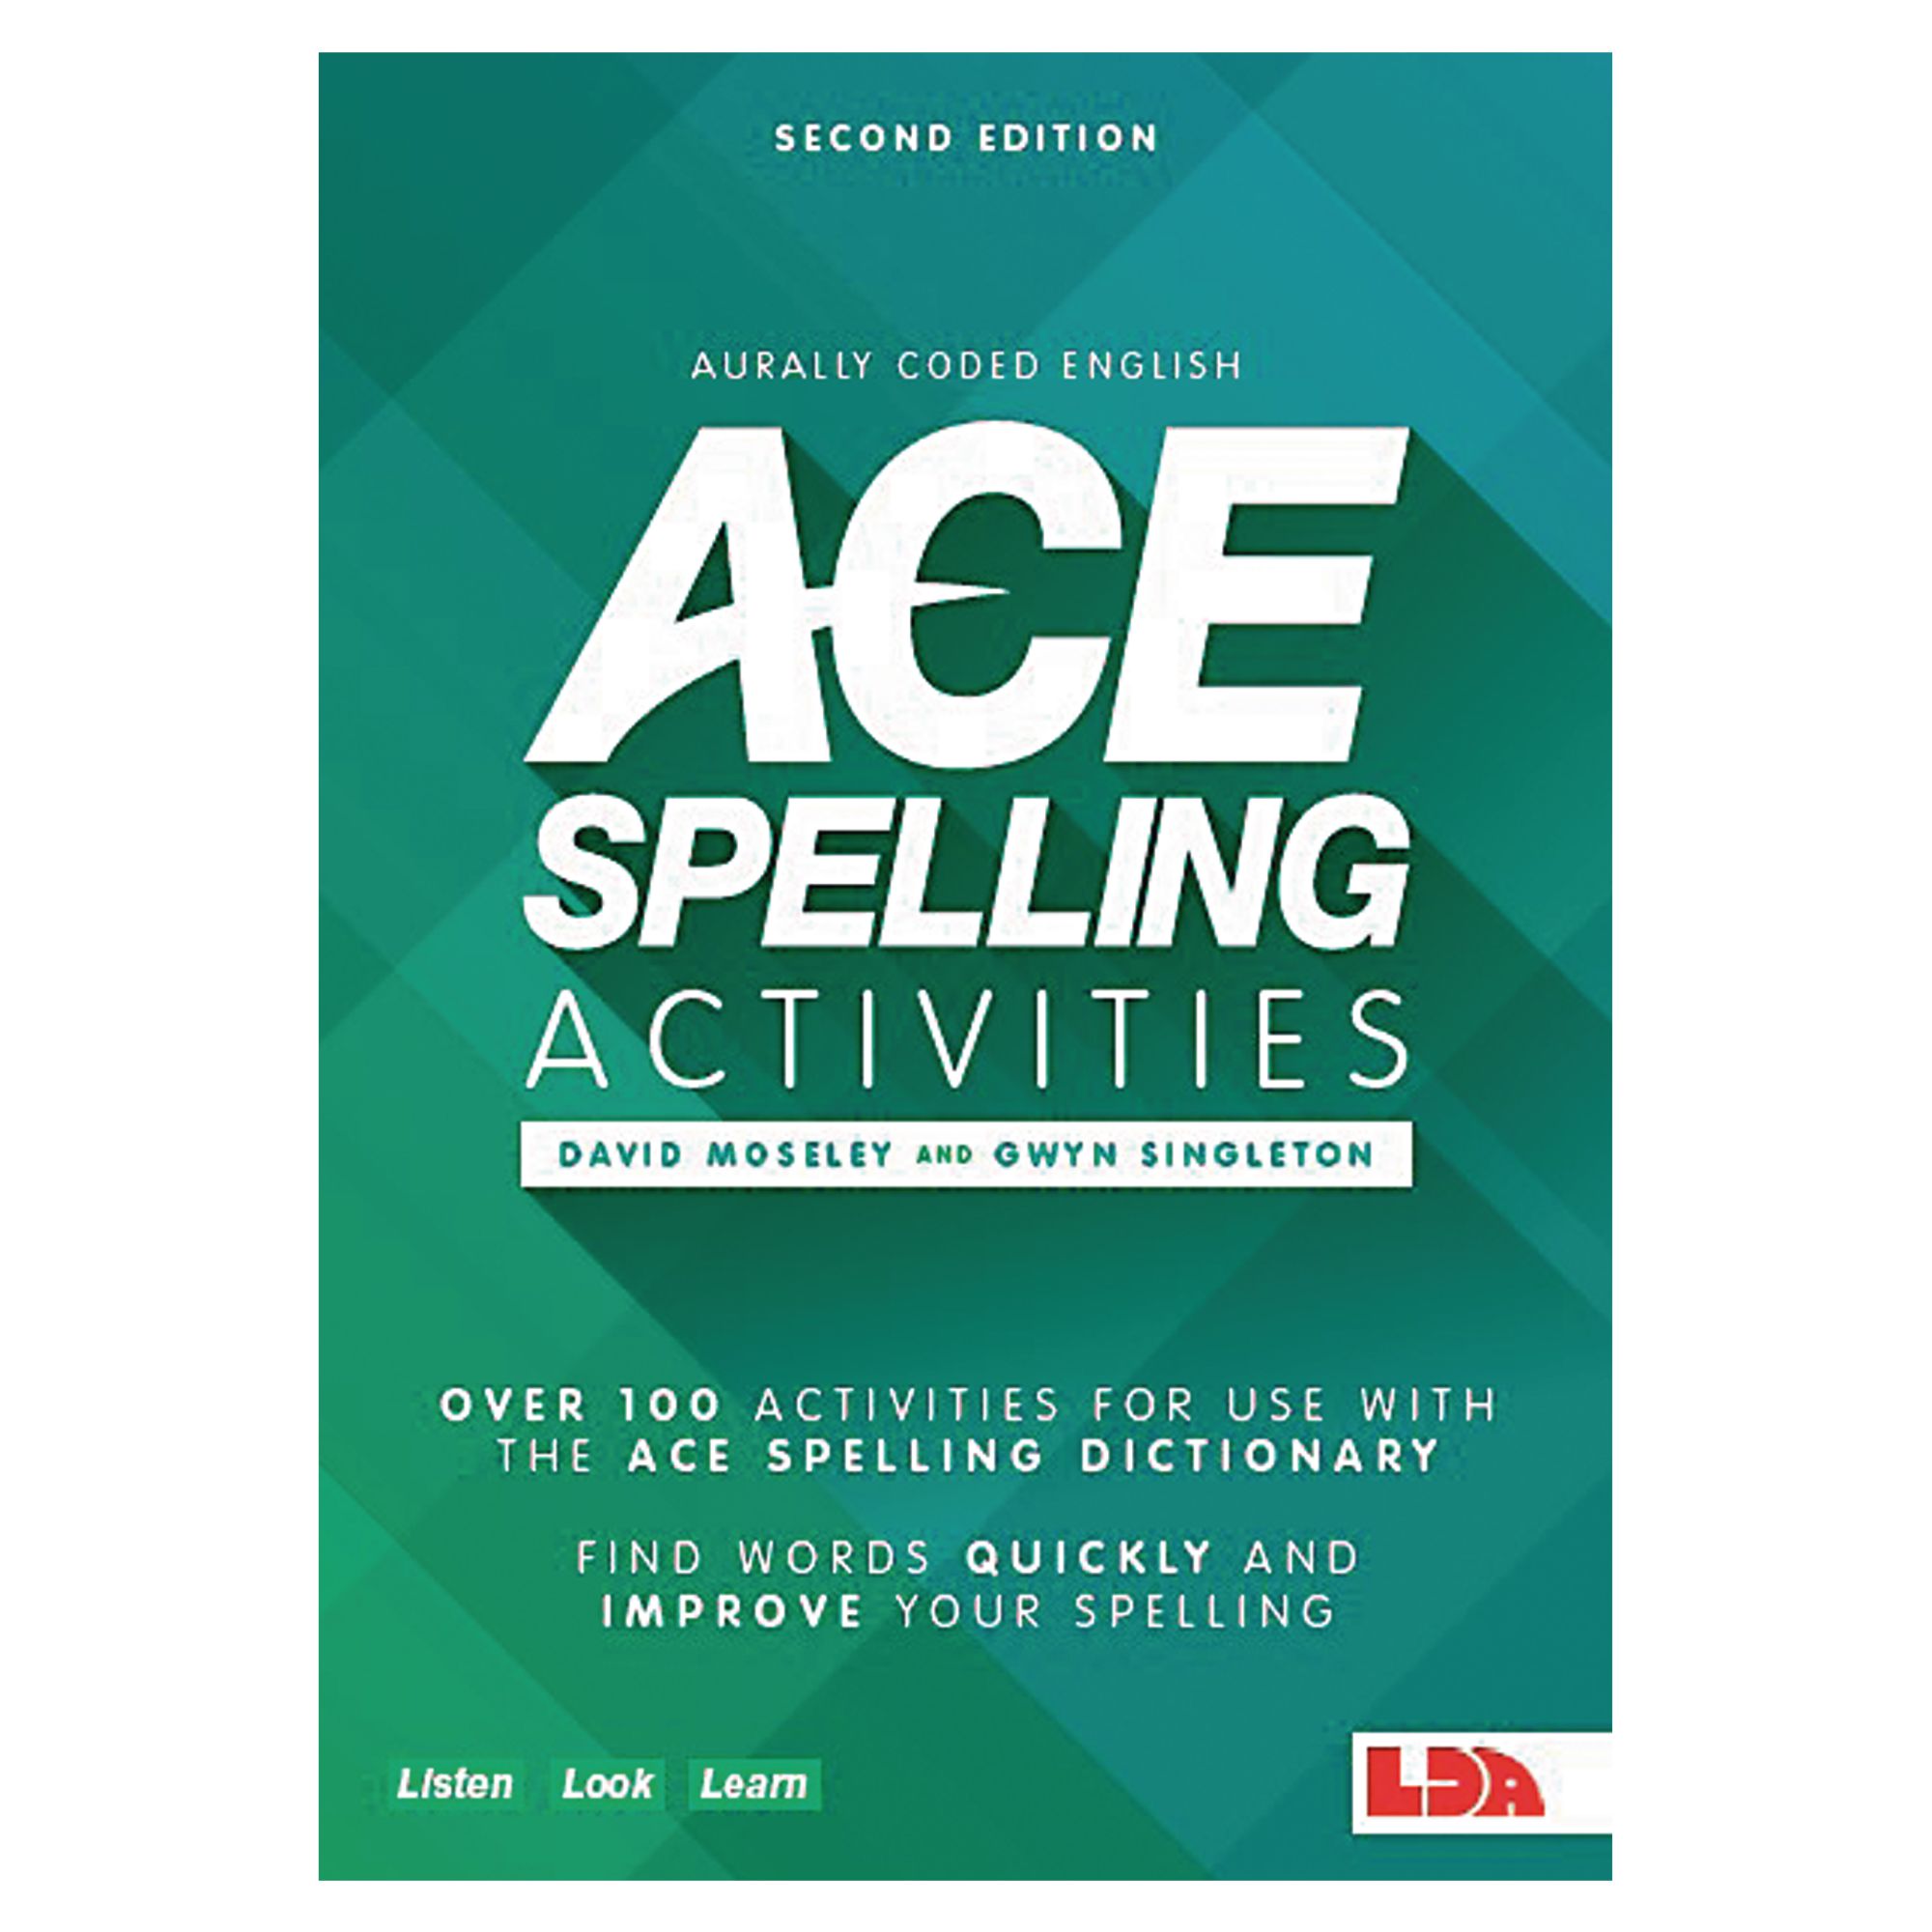 admt00380-lda-ace-spelling-activities-book-lda-resources